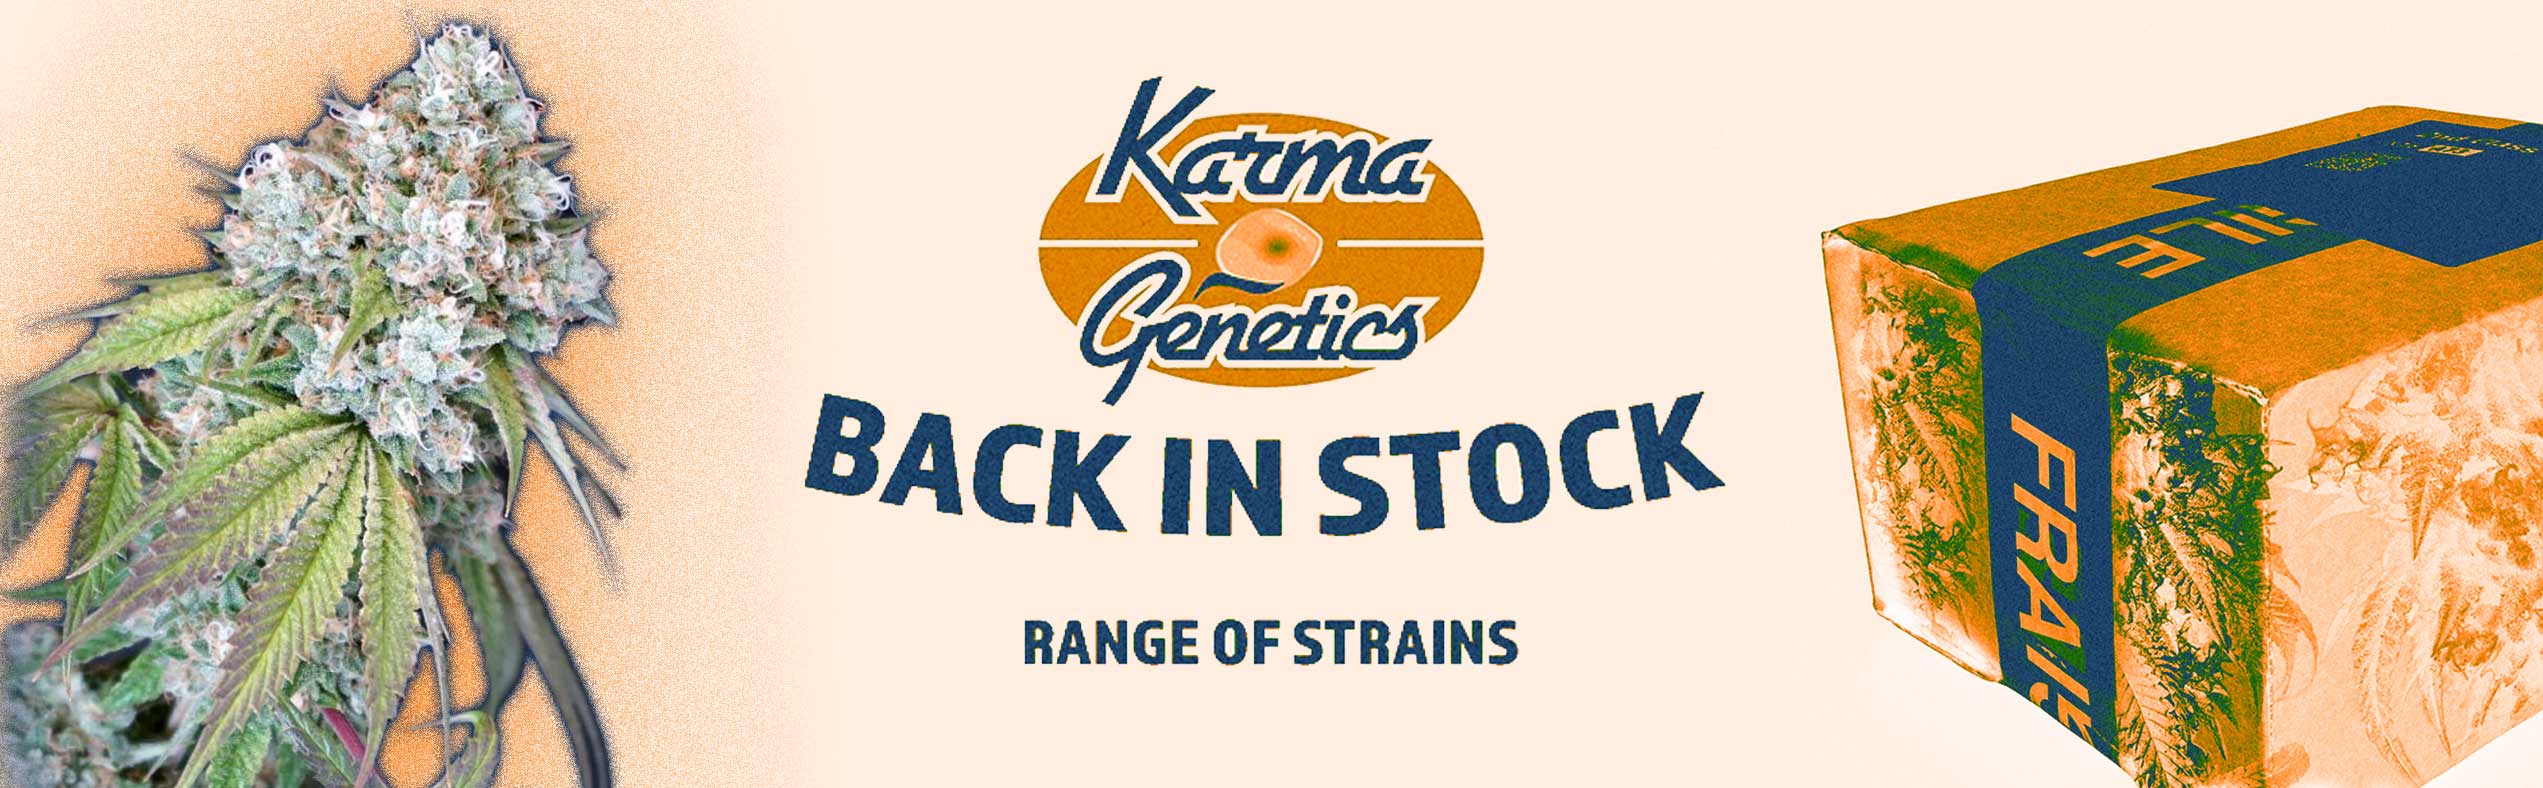 Karma Genetics Back In Stock